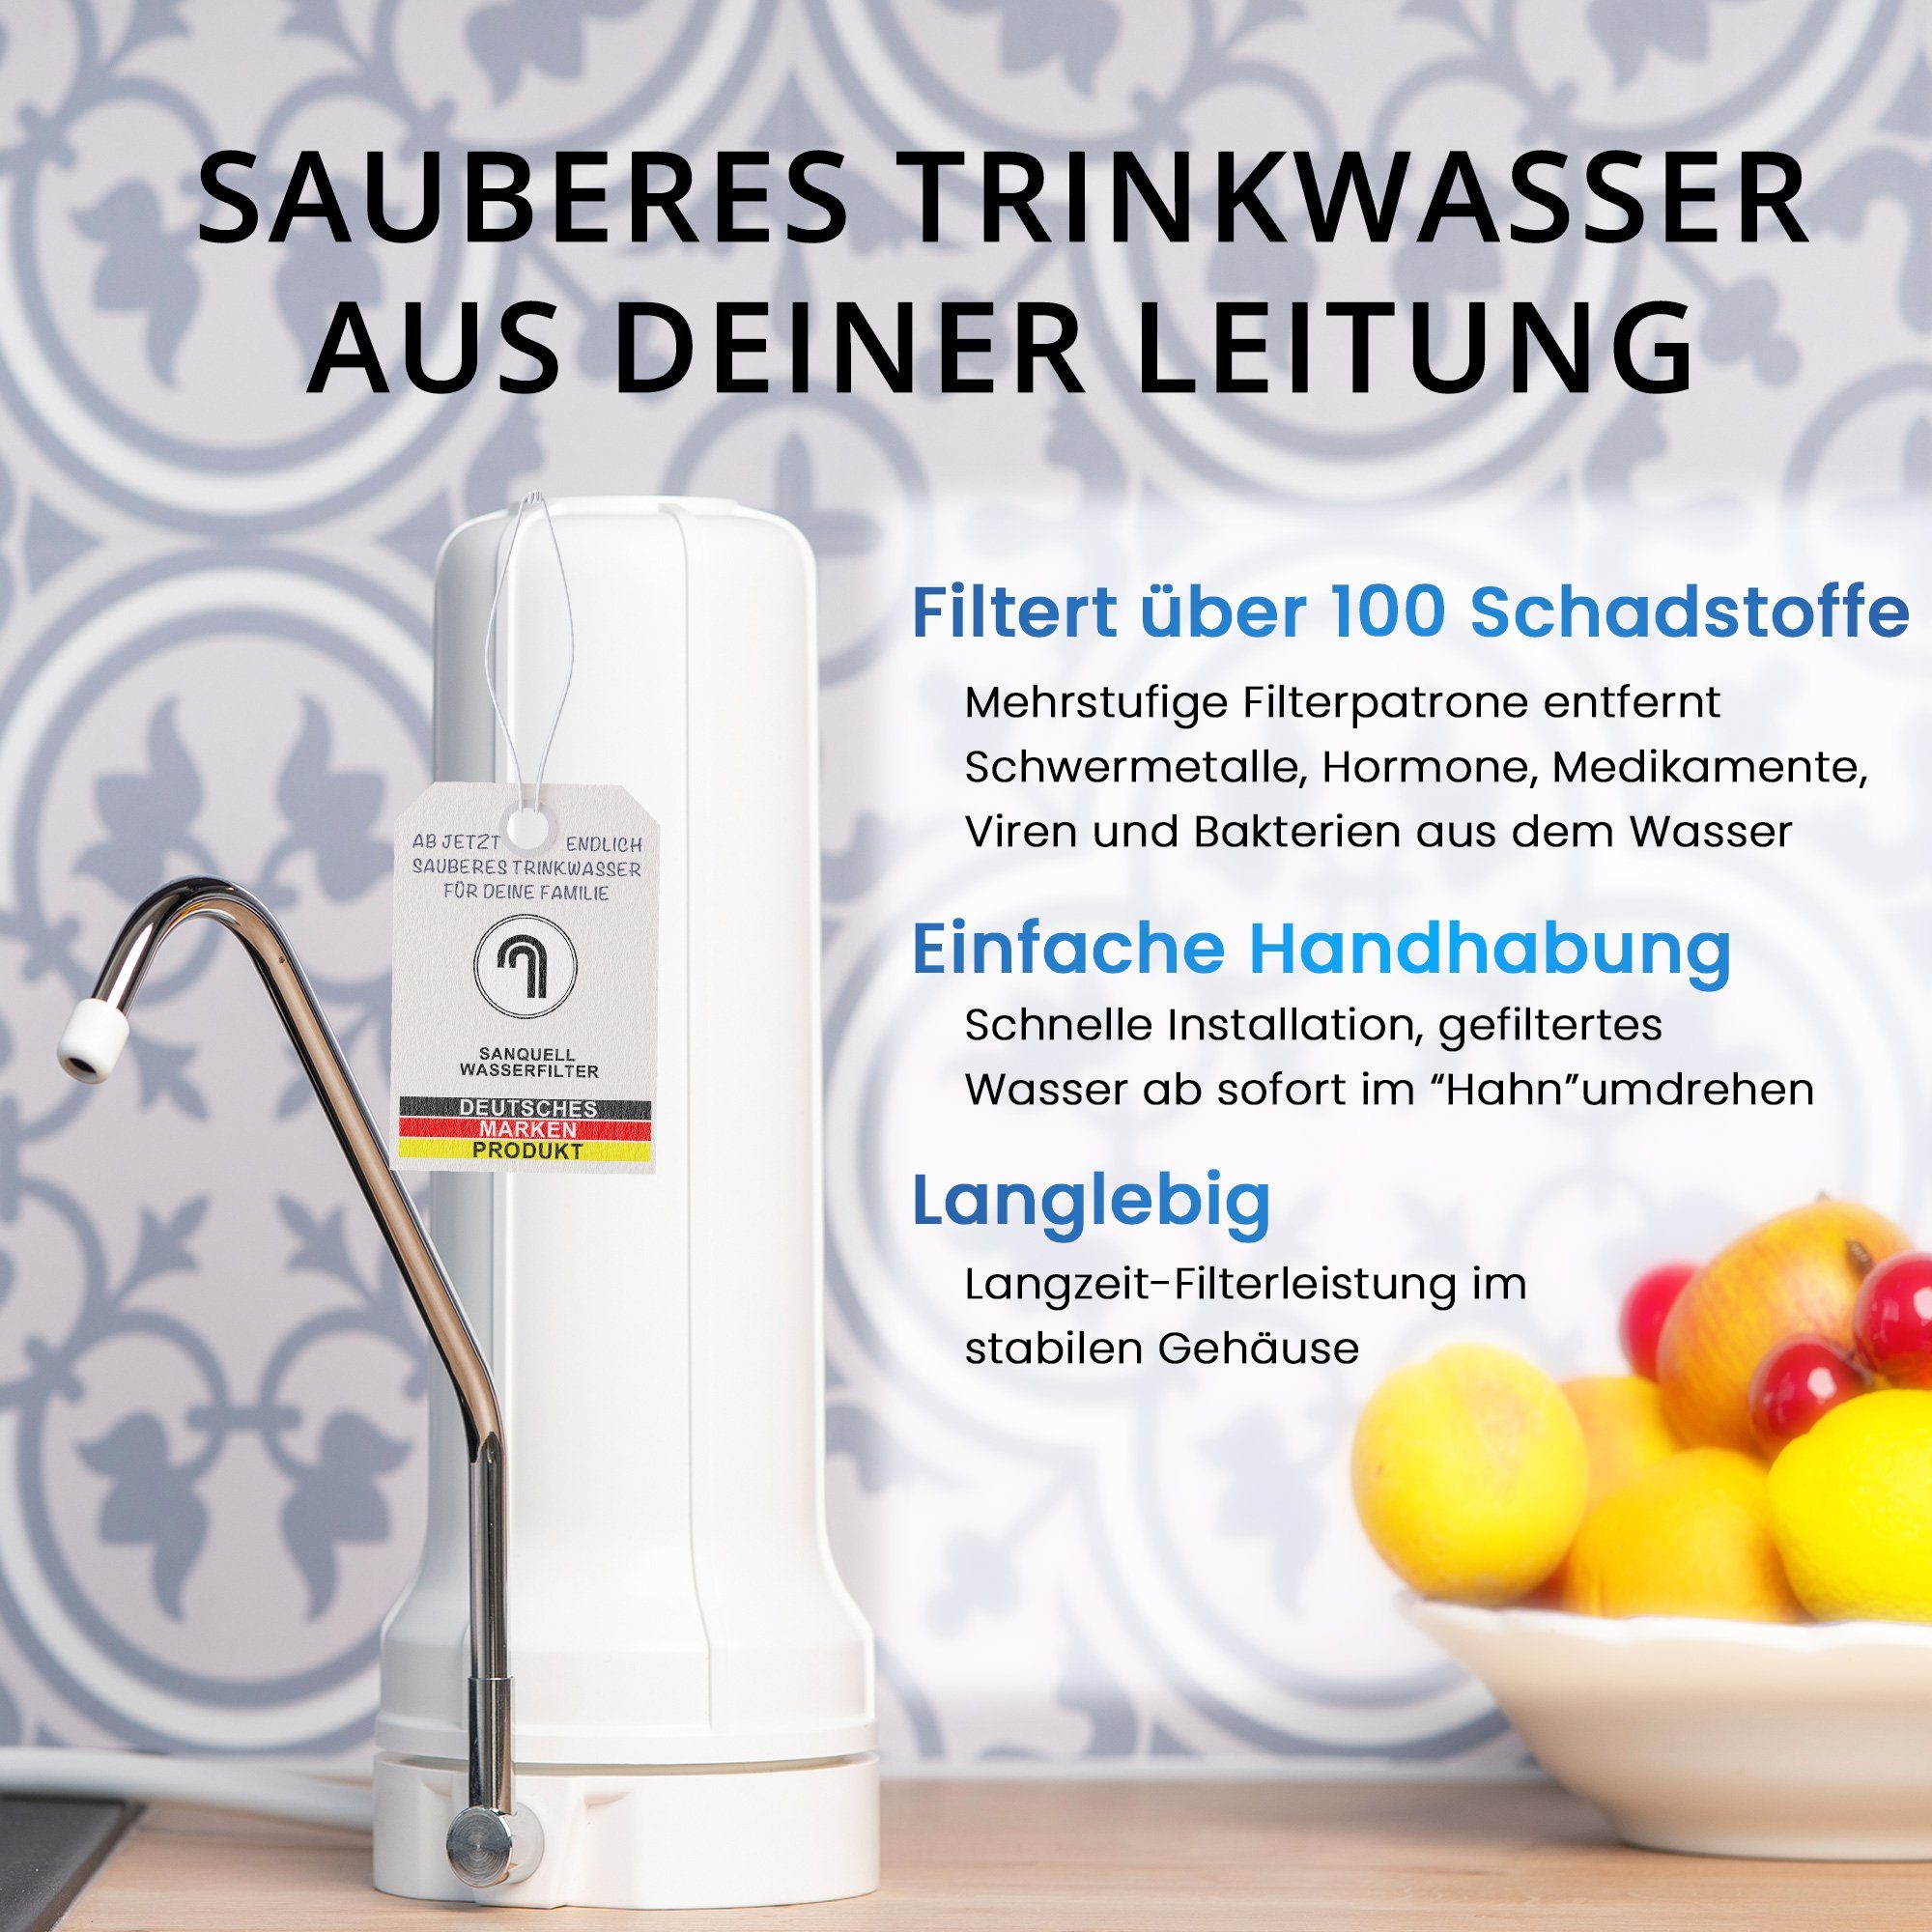 Wasserfilter deutsche mehrstufe Auftisch Filterung, Marke Simply, sanquell